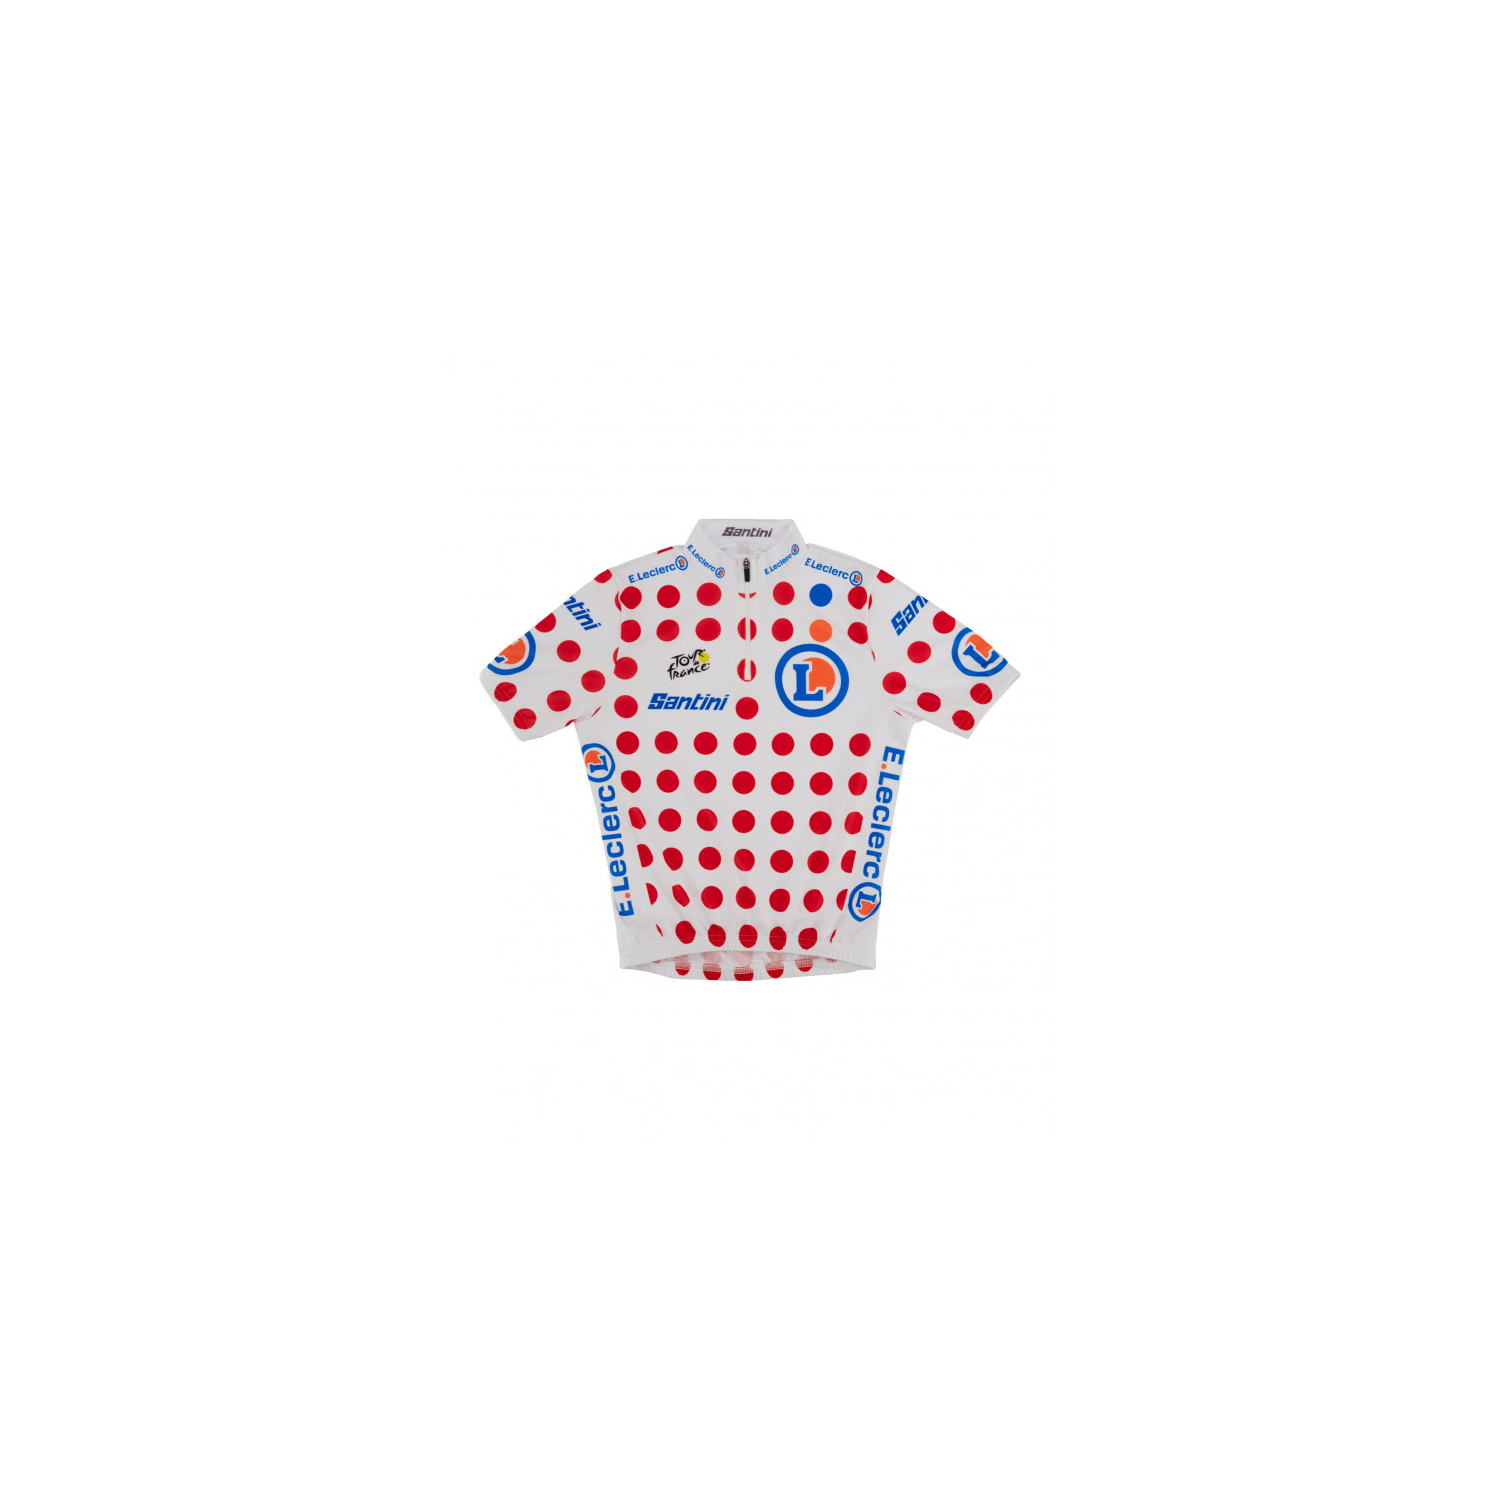 Maillot Cyclisme de leader  Meilleur Grimpeur du Tour de France Pois Enfant